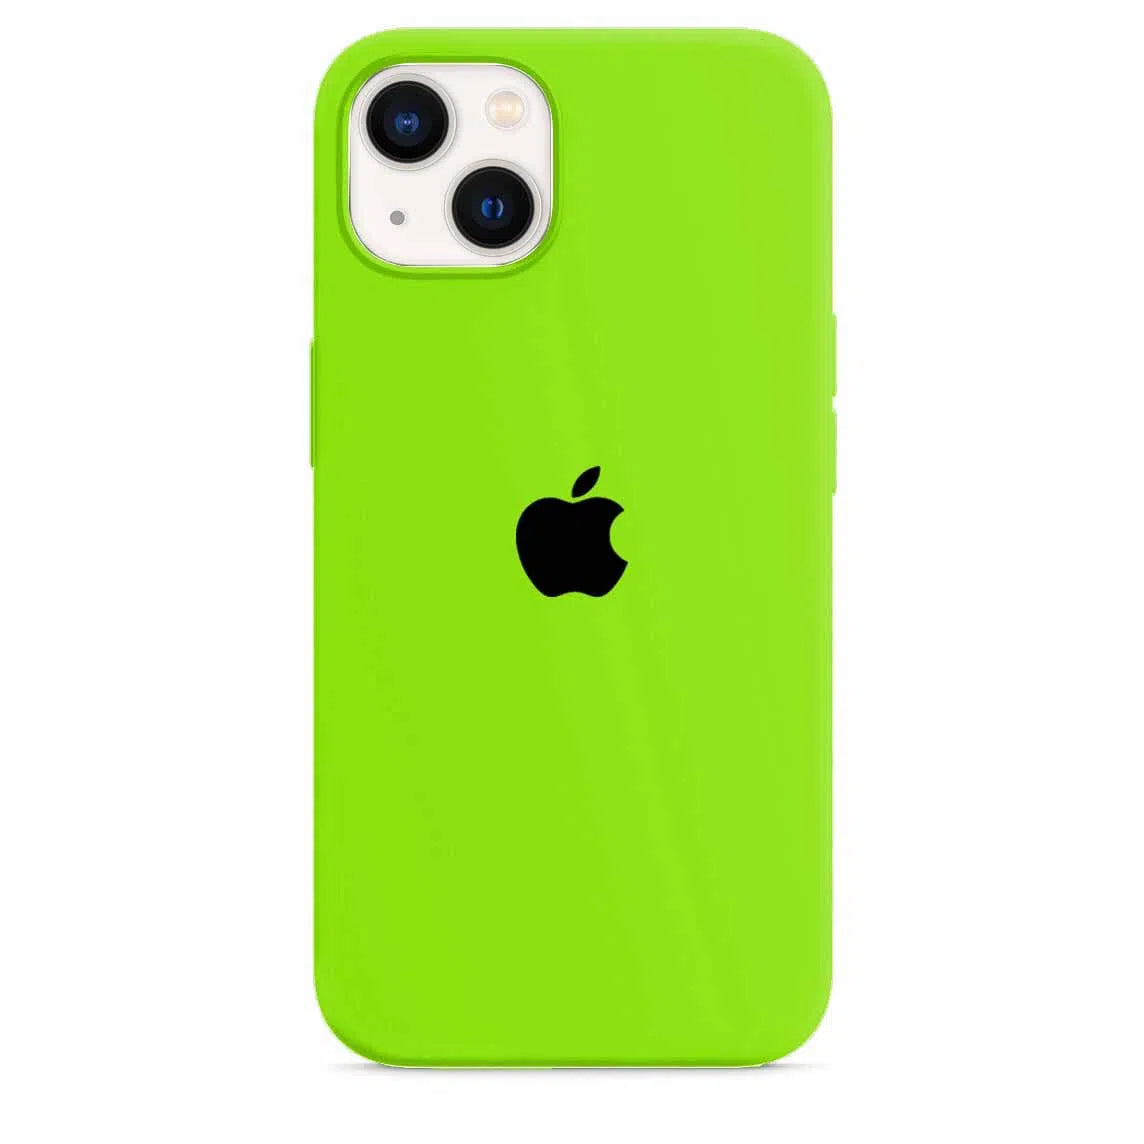 Husa iPhone Silicone Case Crazy Green (Verde) Anca's Store 13 mini 